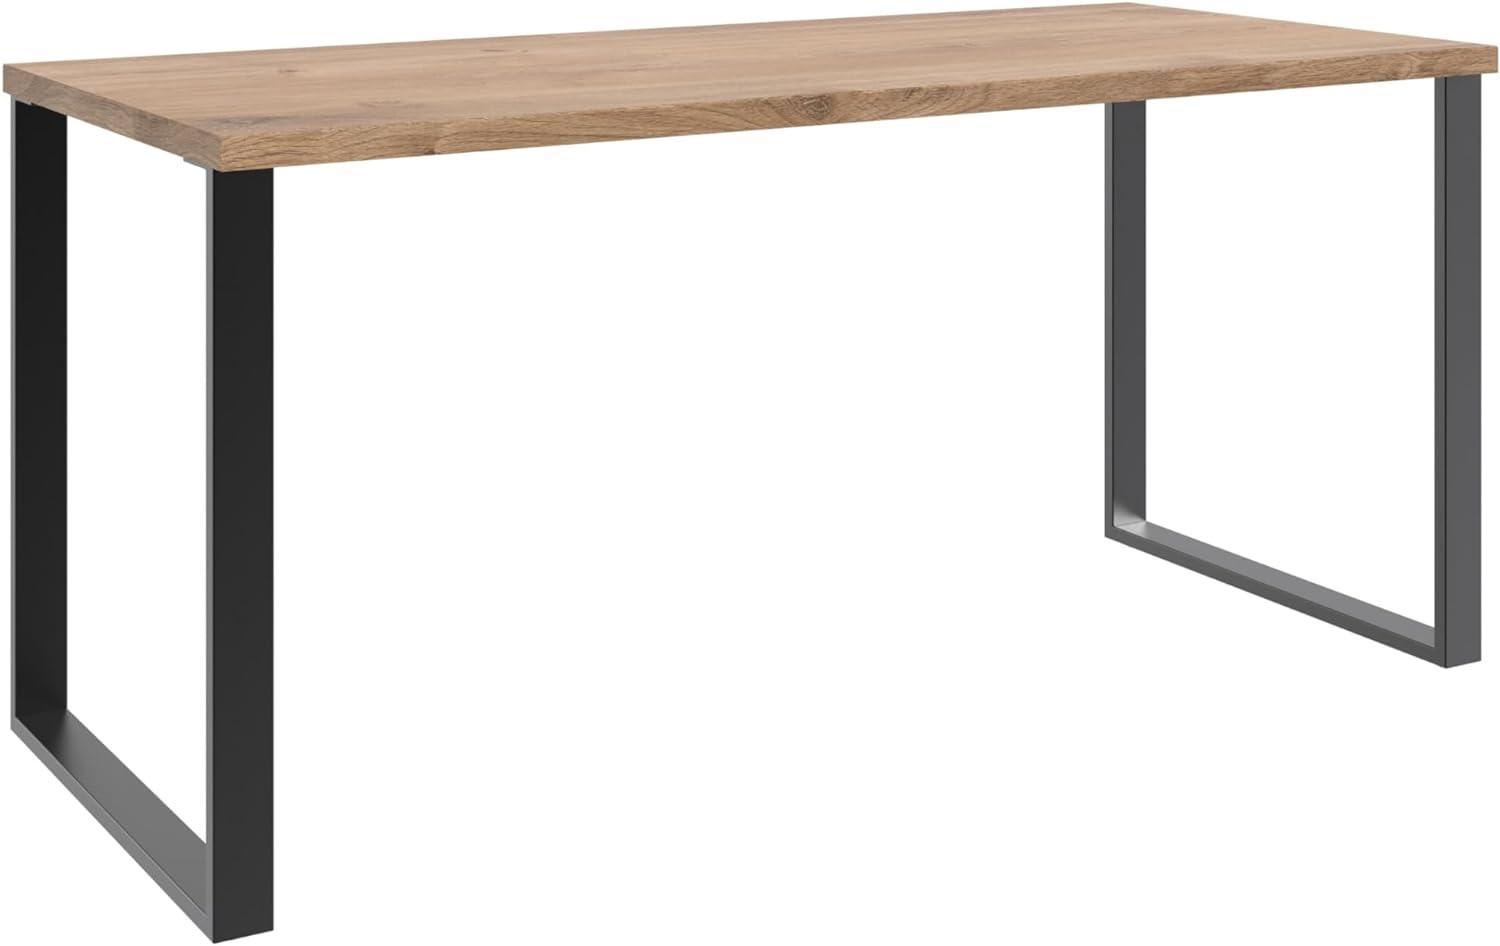 Schreibtisch >HOME DESK< in Plankeneiche Nachbildung - 159x75x70cm (BxHxT) Bild 1